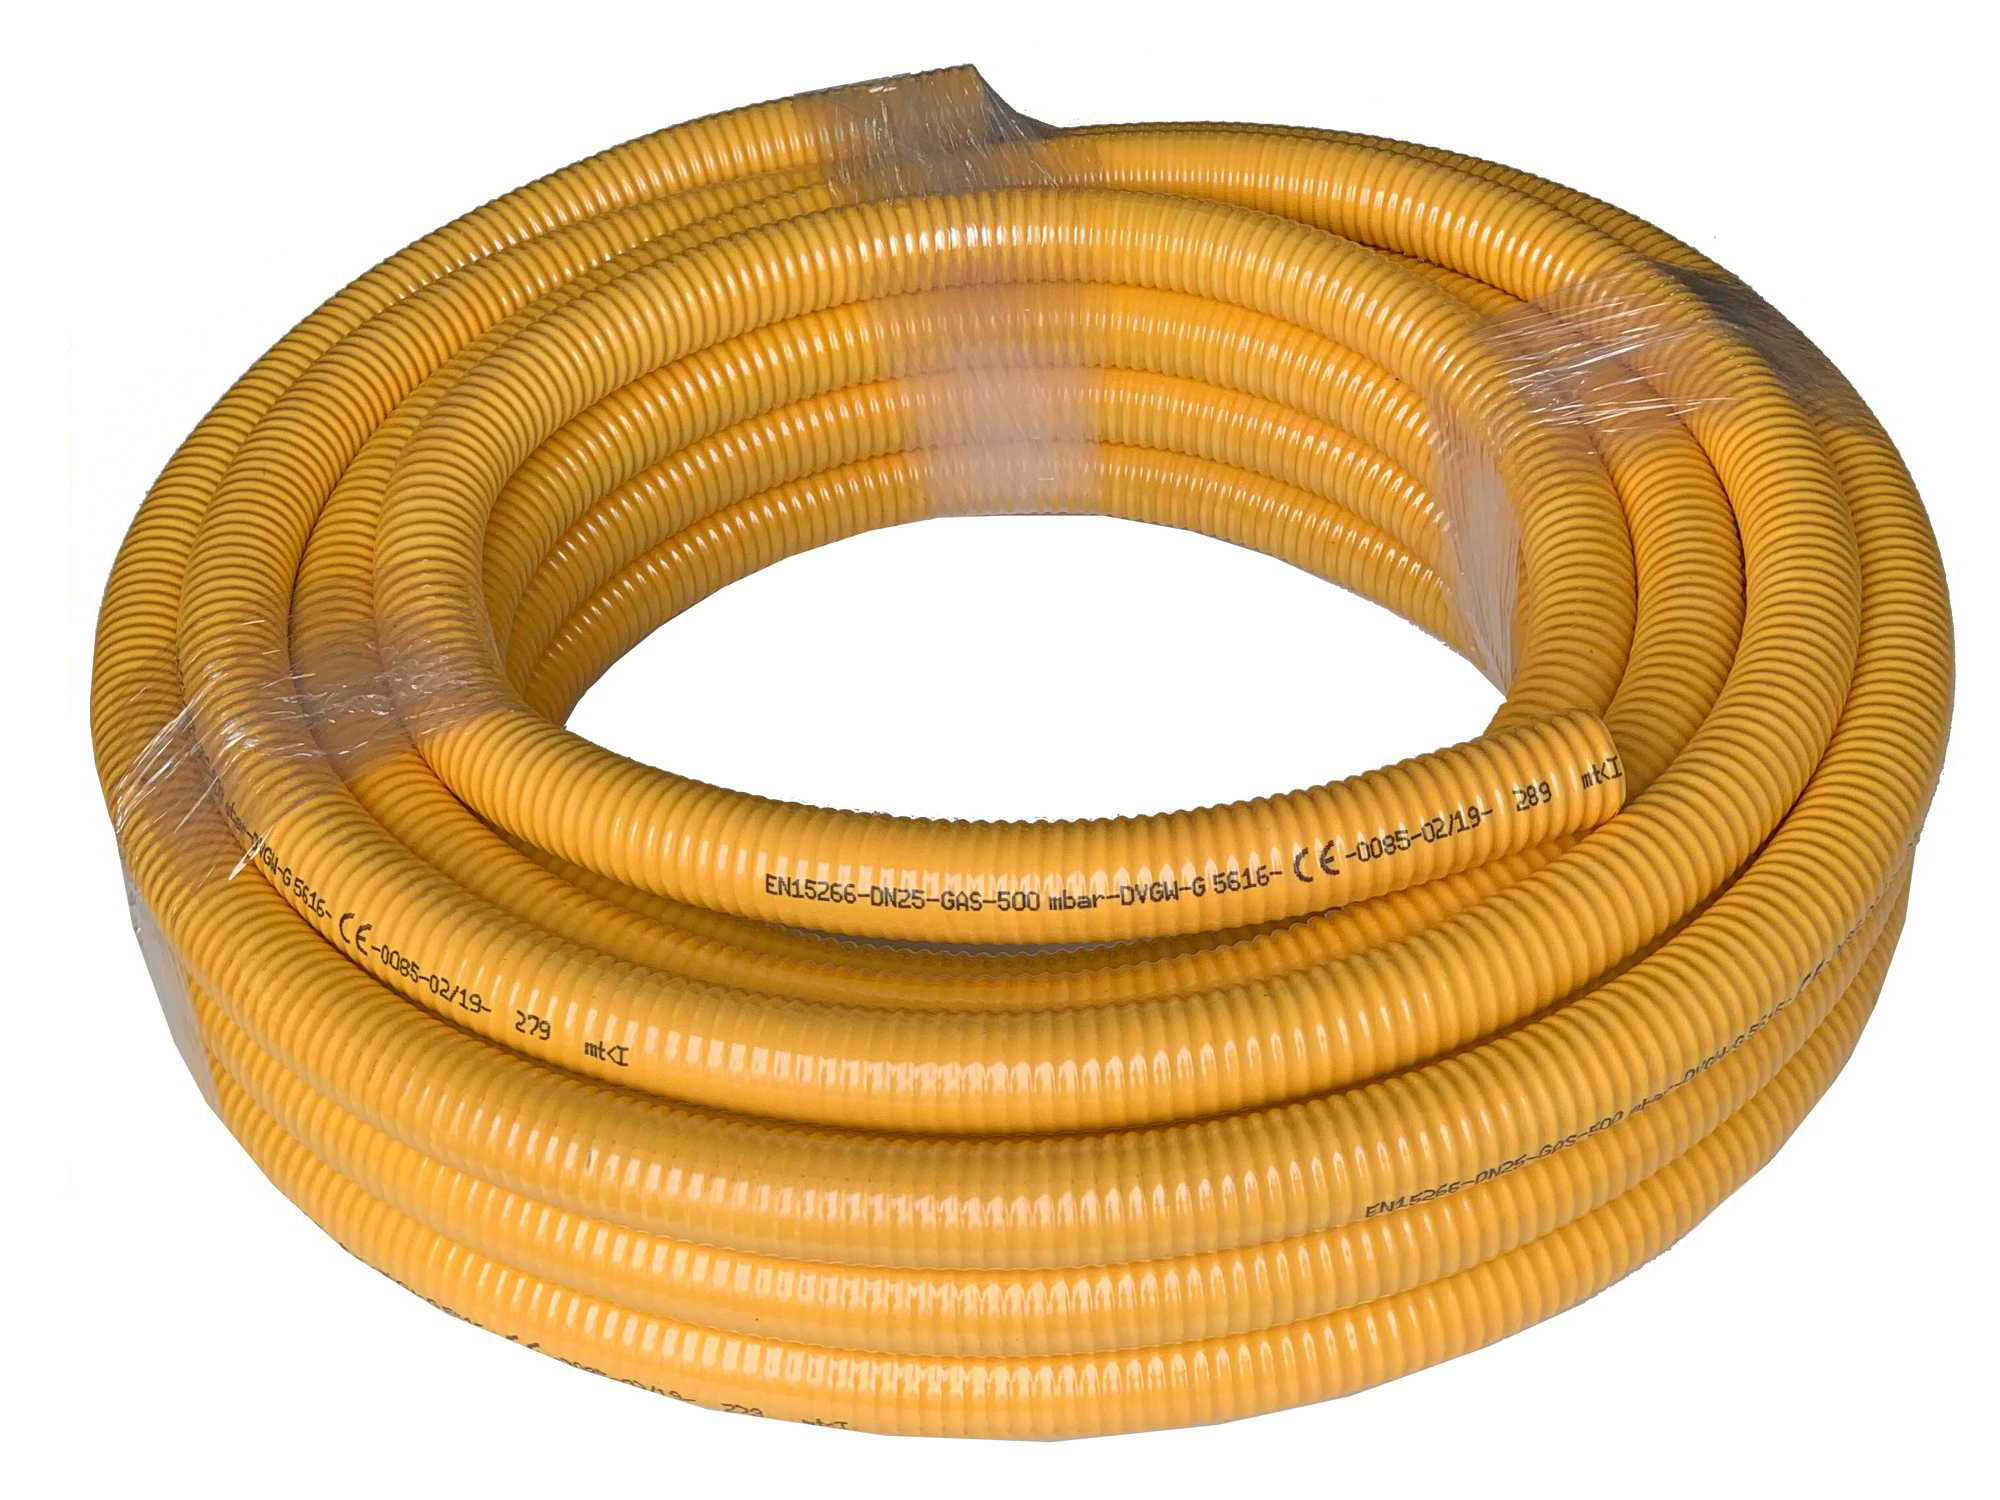 Gas-Flexschlauch Edelstahlwellrohr DN12 bis DN25 mit gelbem PVC-Mantel als Meterware - DVGW zertifiziert